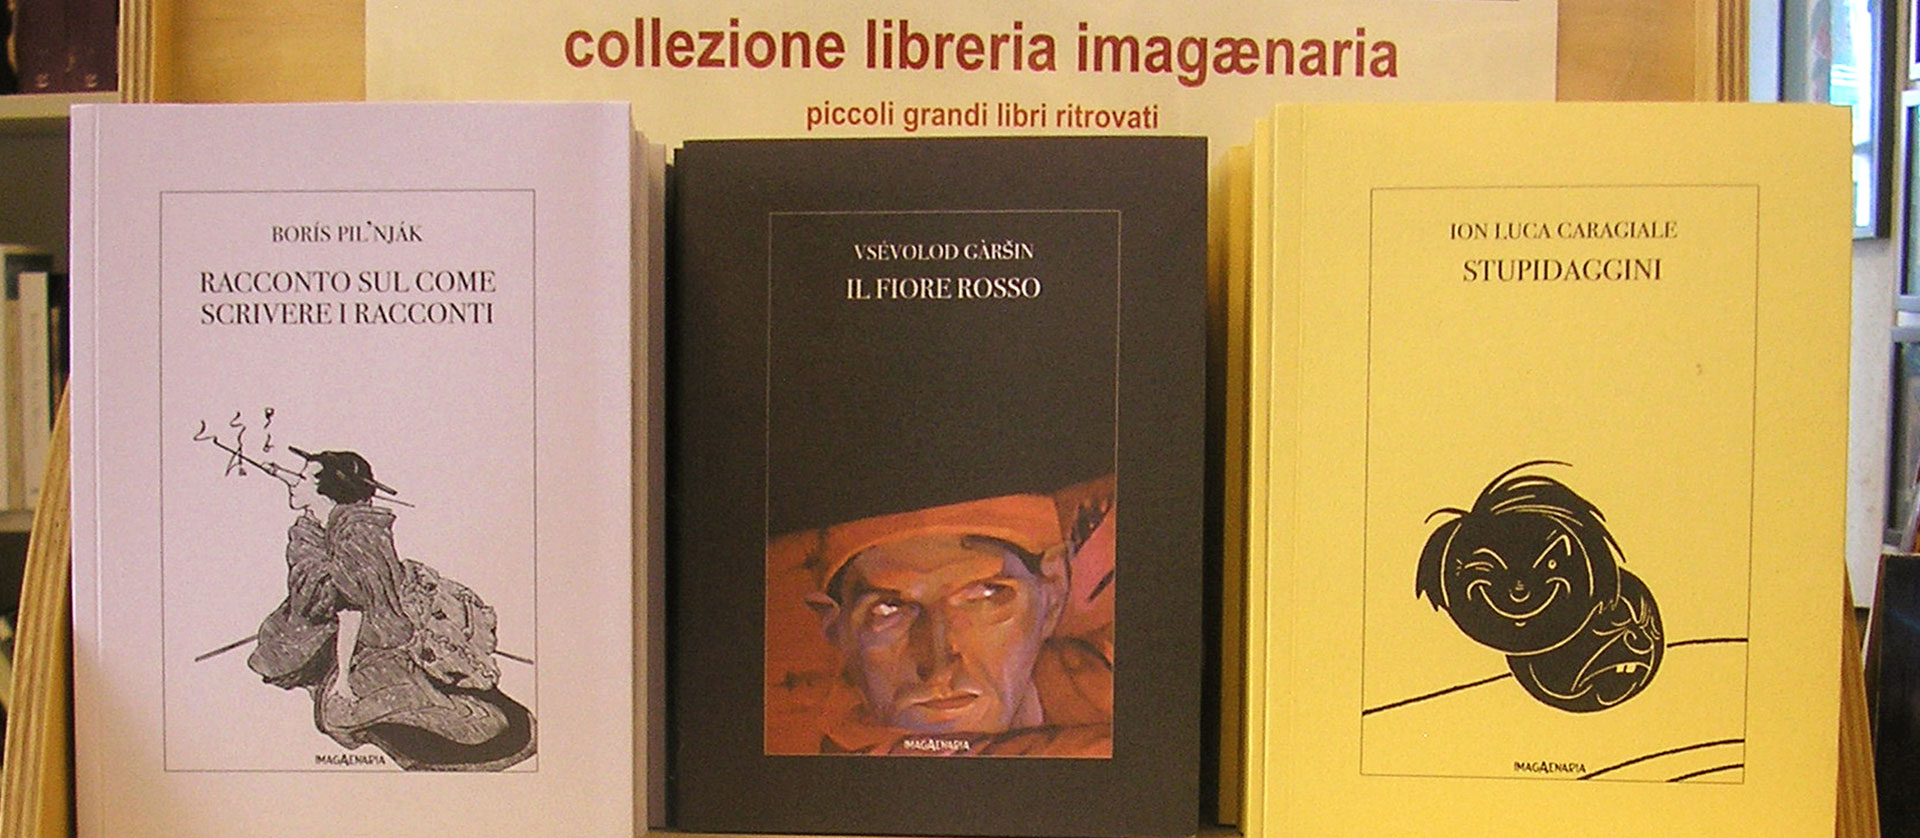 Imagaenaria - Edizioni, Libreria, Stampe Antiche